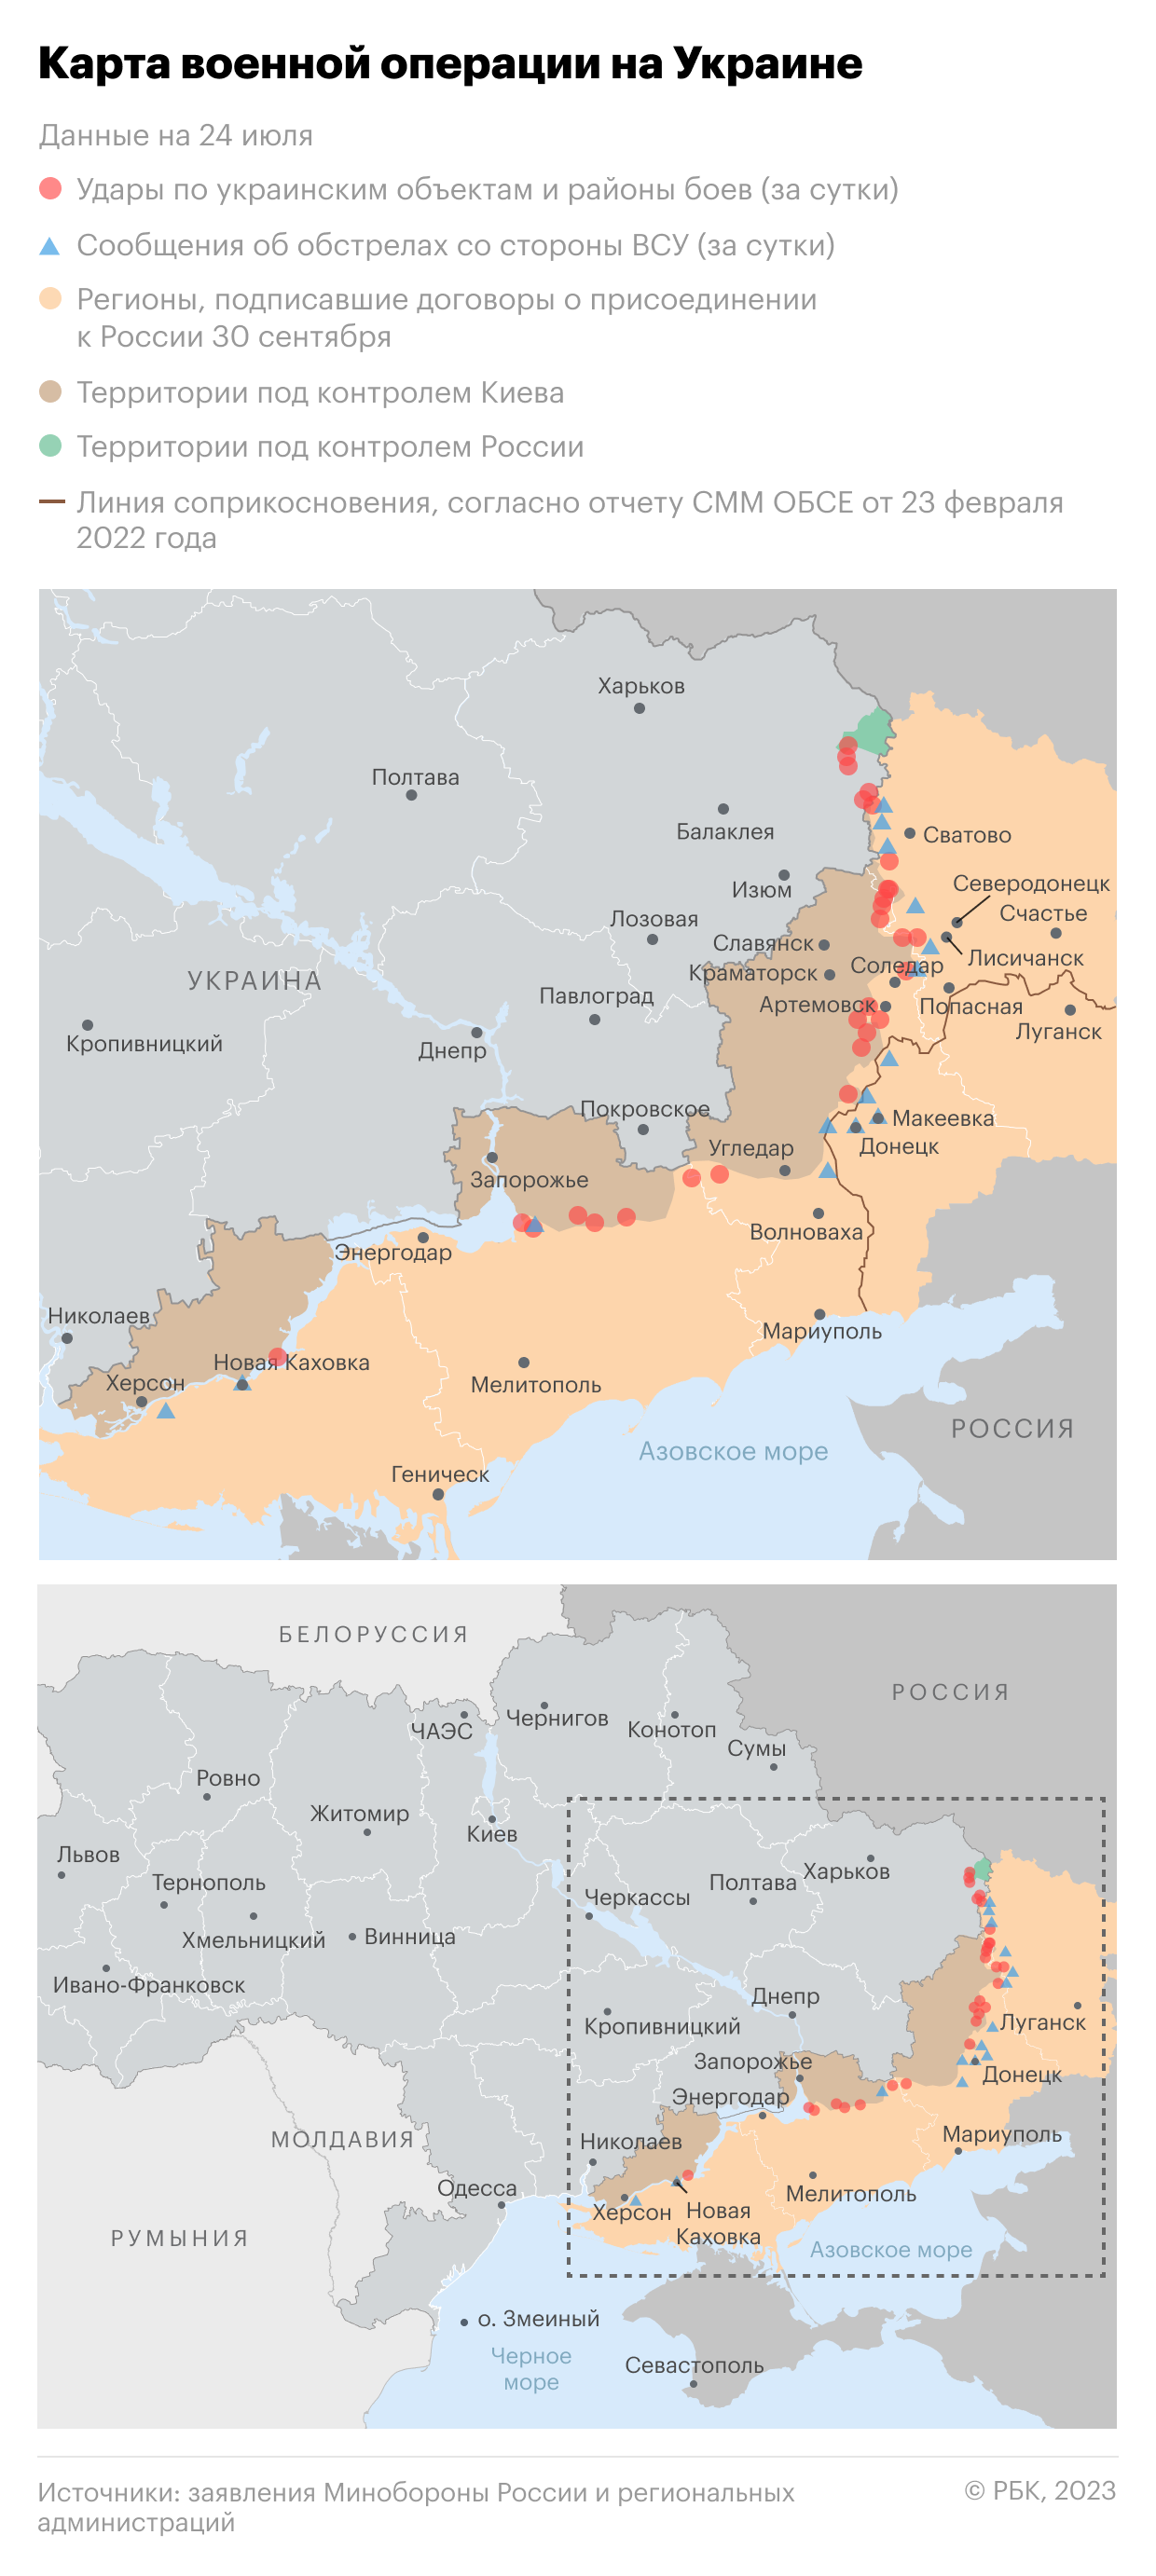 RP предупредила о возможном изменении позиции Запада по поддержке Украины"/>













